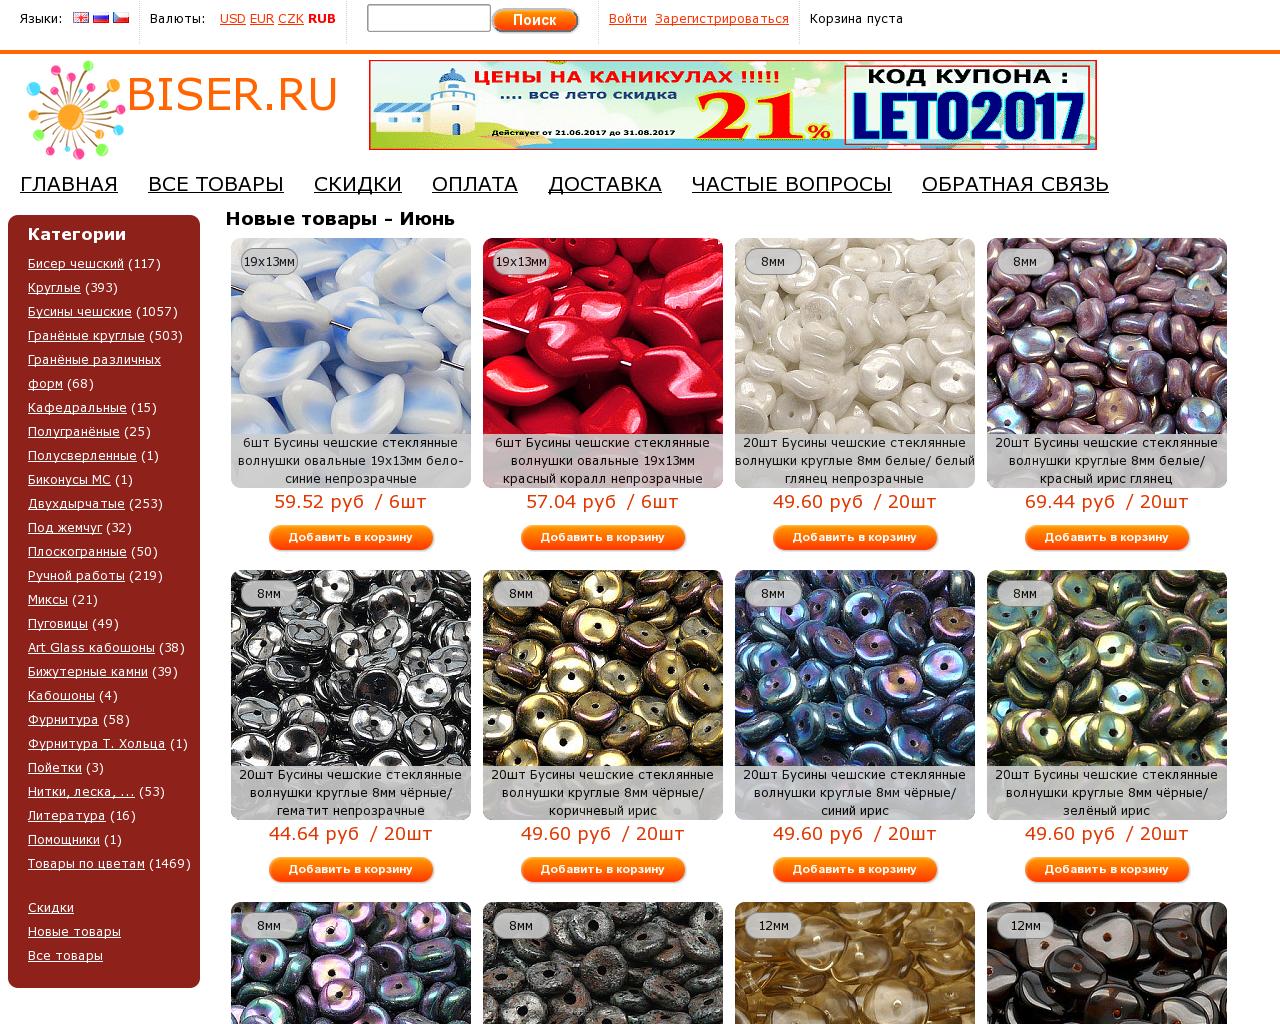 Изображение сайта biser.ru в разрешении 1280x1024